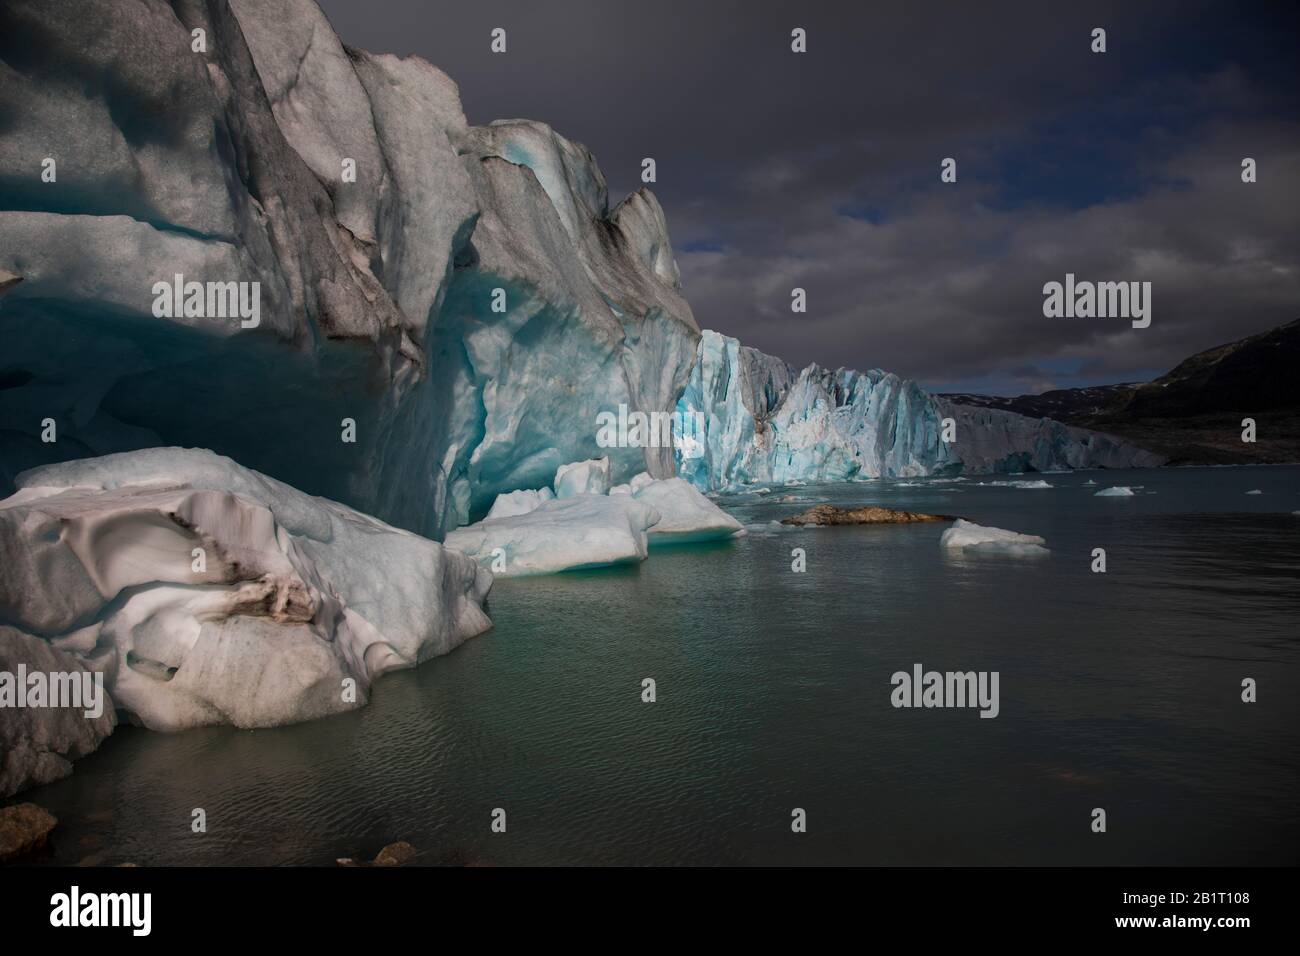 Le front de glacier sur l'eau. La fonte et la pose de glace Banque D'Images